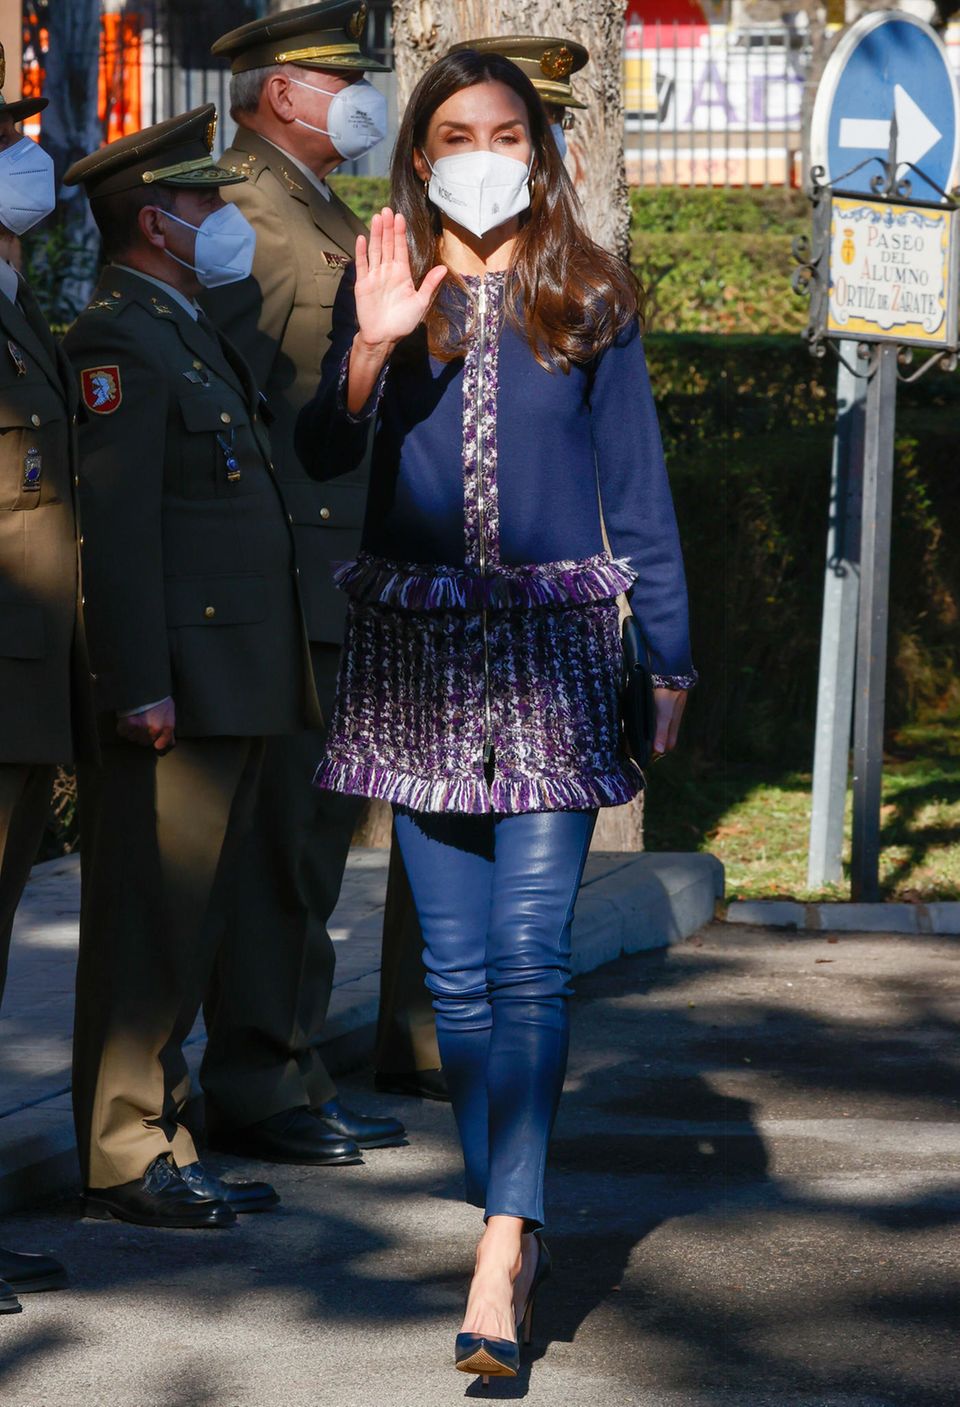 Königin Letizia besucht die Jubiläumsfeier einer Militärorganisation, und die Sonnenstrahlen beleuchten ihren royalen Look in Dunkelblau und Lila besonders schön. Das Oberteil mit Tweed-Optik stammt von Carolina Herrera, die farblich perfekt dazu passende Leder-Leggins von Uterqüe.